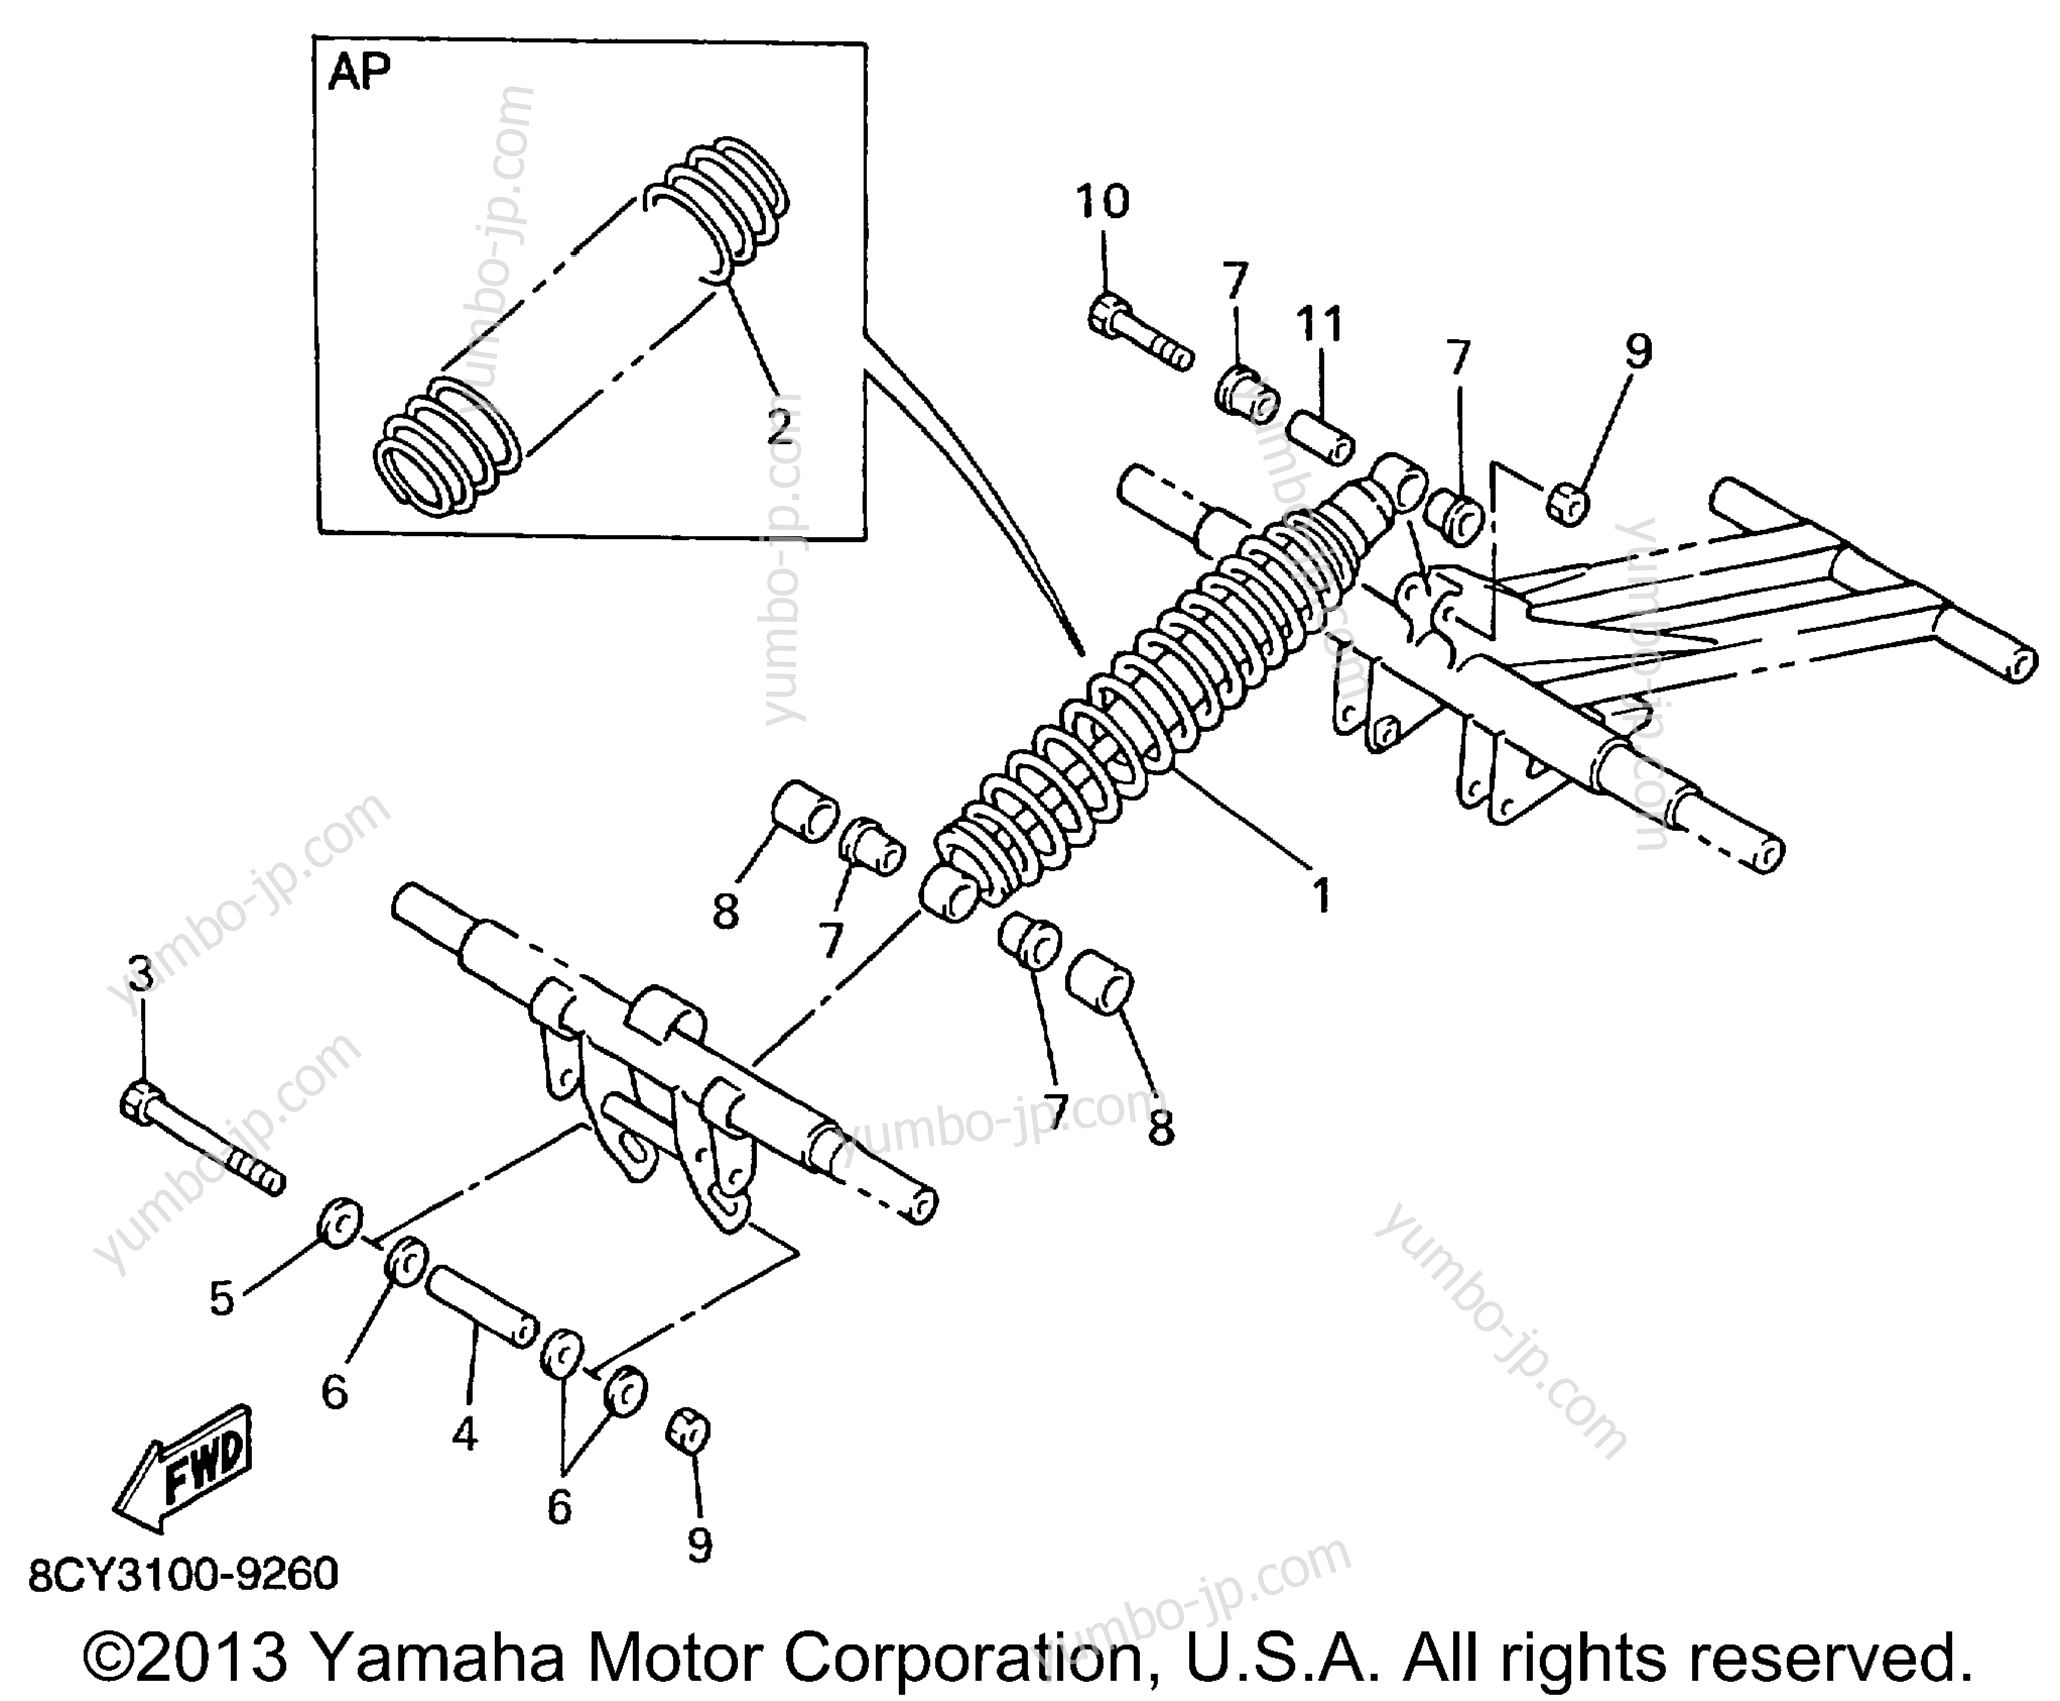 Track Suspension 3 для снегоходов YAMAHA VT500C 1999 г.